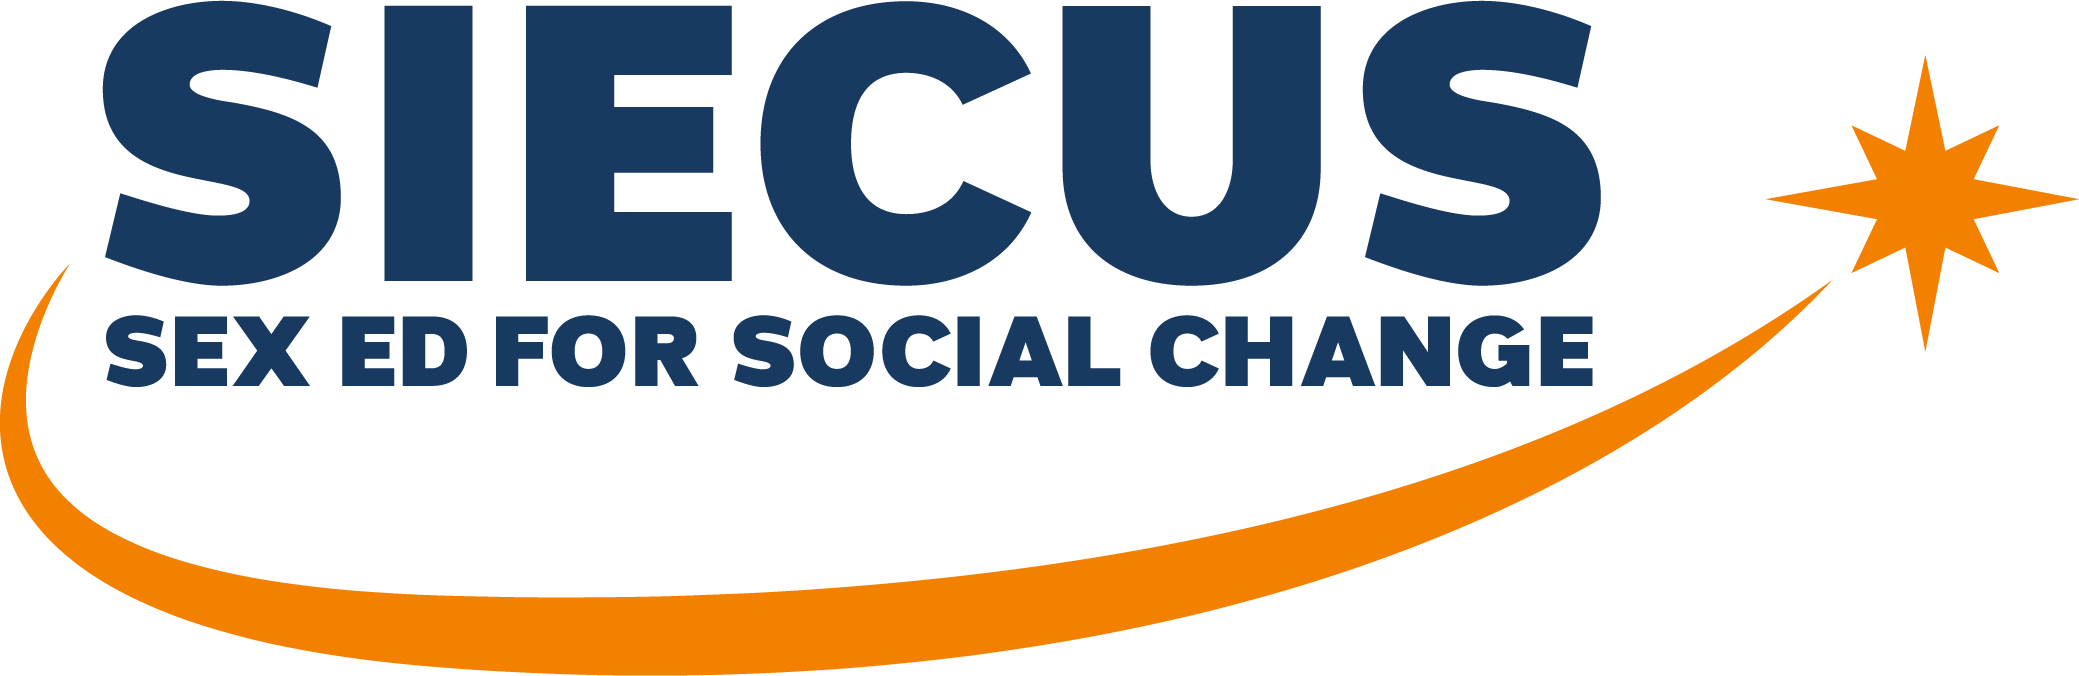 SIECUS: Sex Ed for Social Change